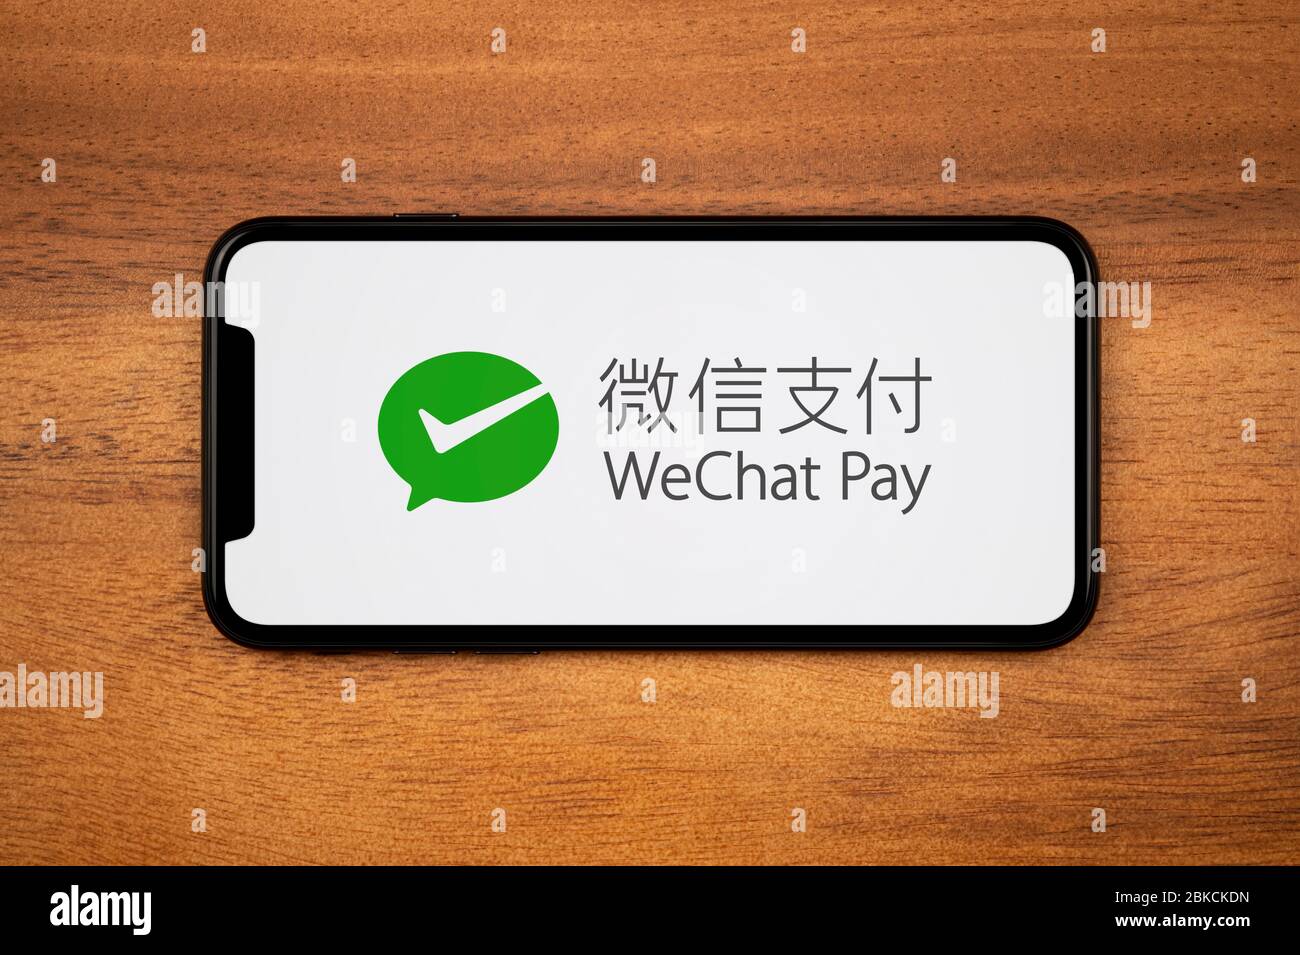 Un smartphone affichant le logo WeChat Pay repose sur une table en bois ordinaire (usage éditorial uniquement). Banque D'Images